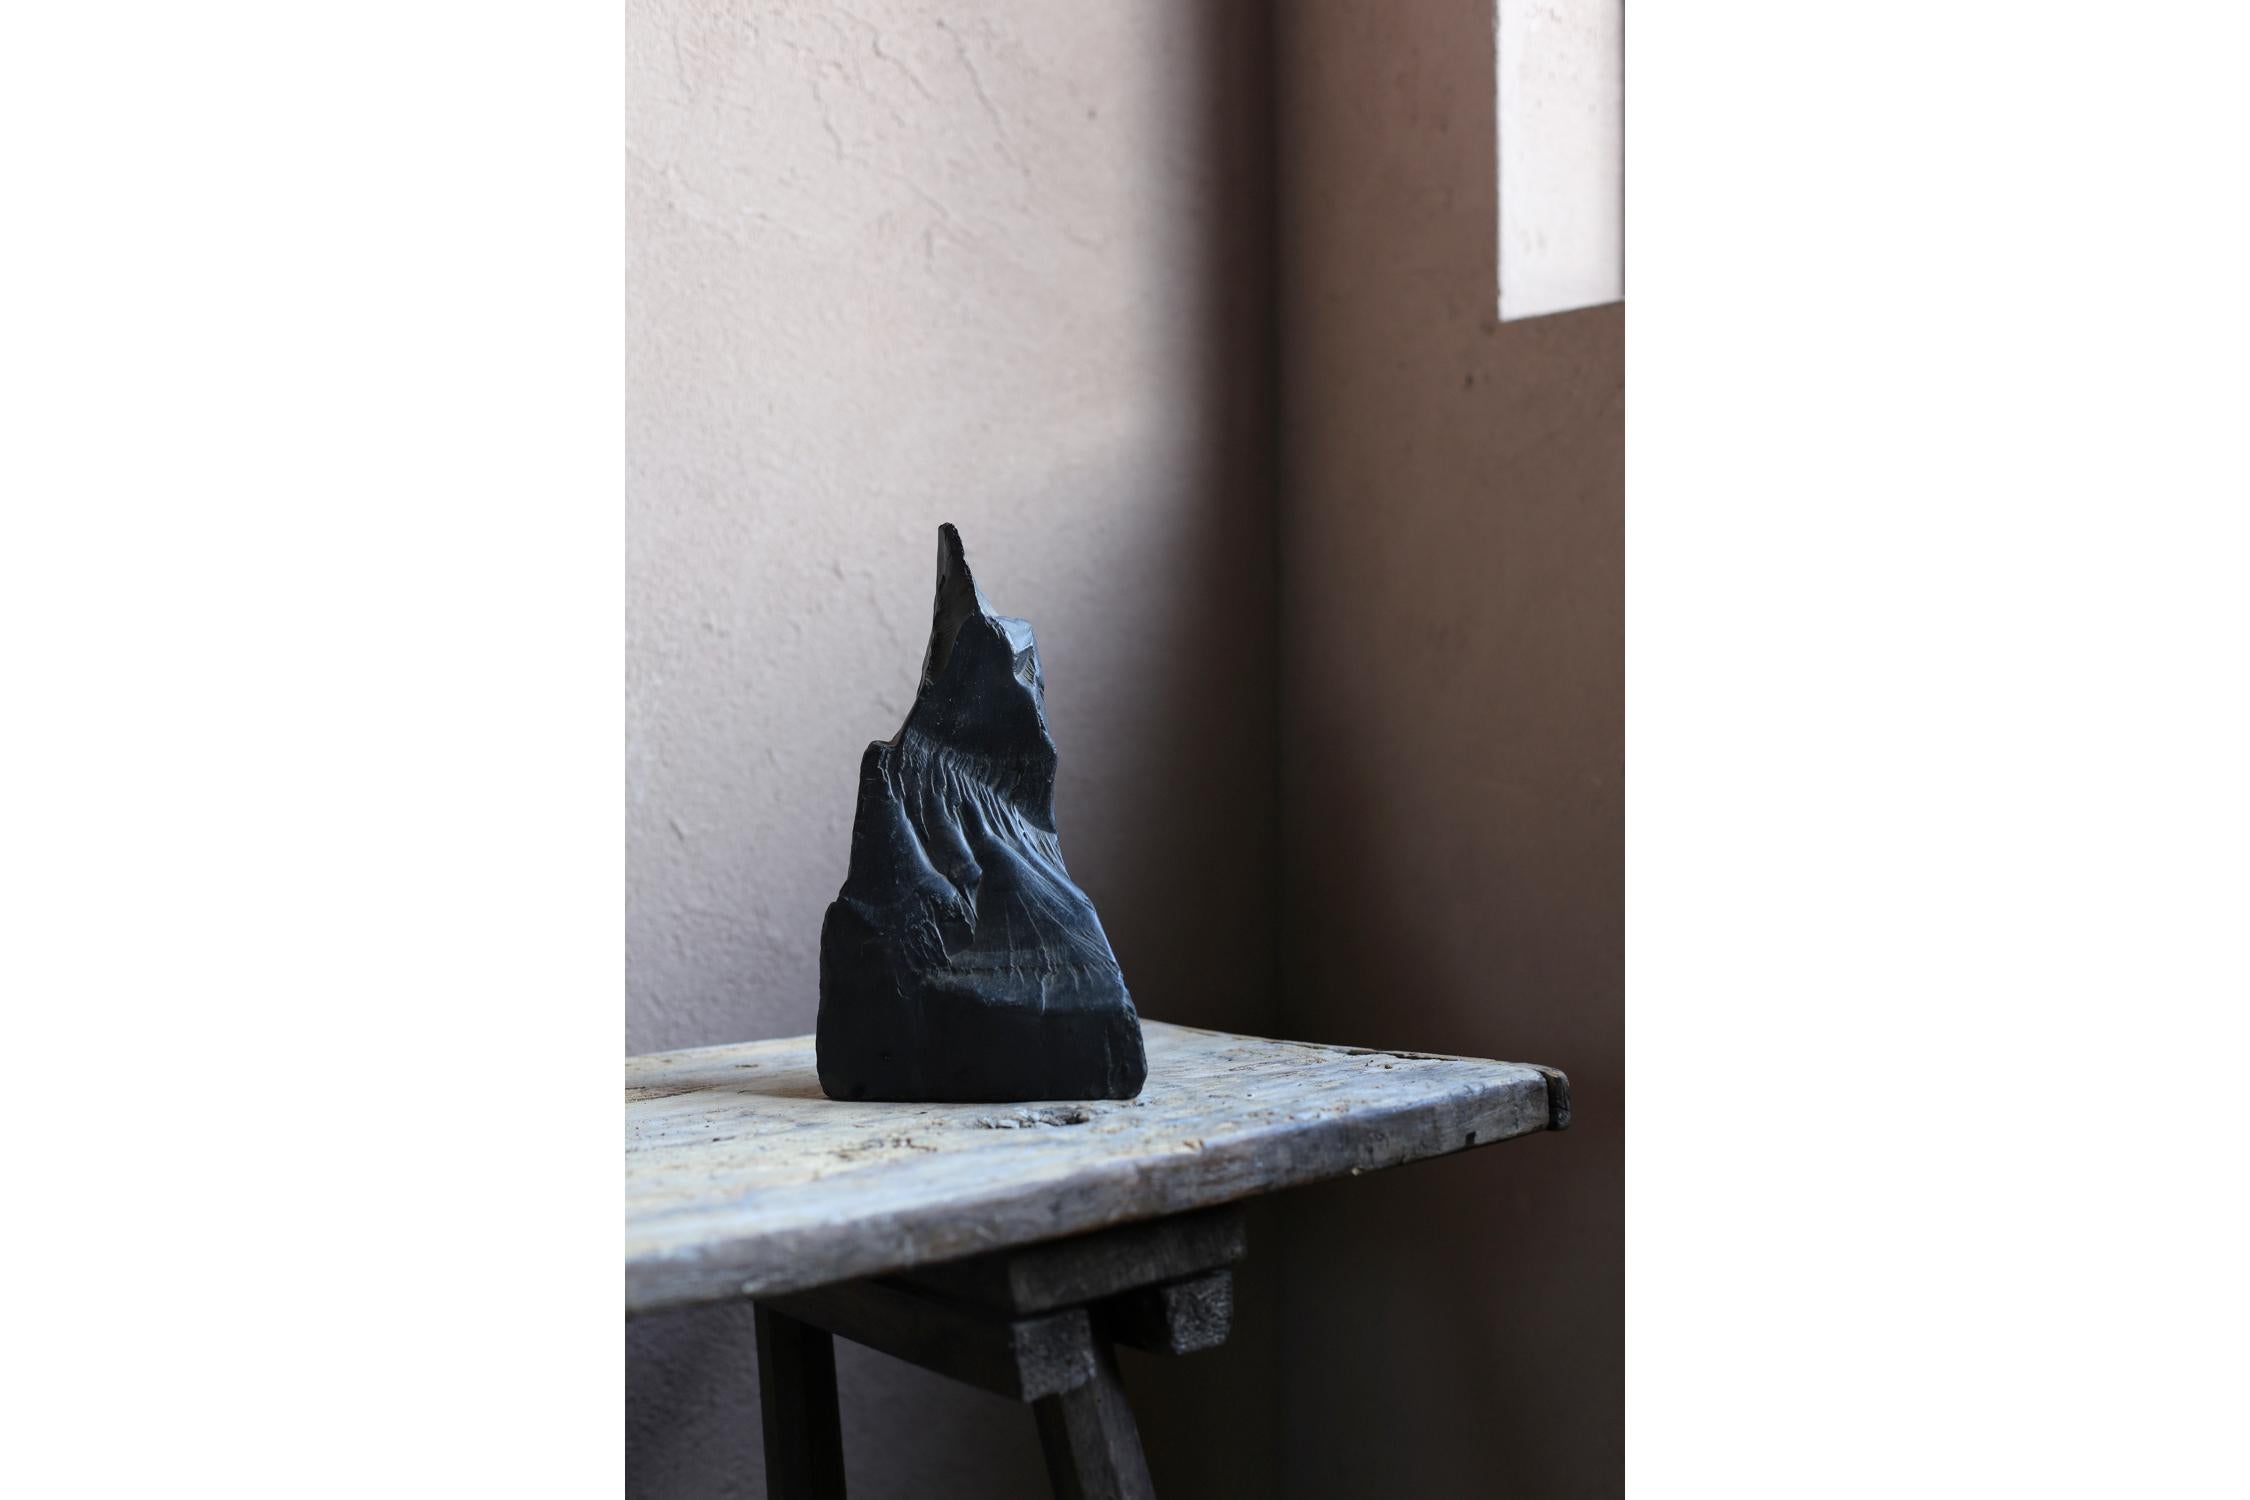 Il s'agit d'un ancien objet japonais en pierre.
Un objet en pierre noire et brillante qui ressemble à la forme d'un bouddha.
Une belle sculpture créée par la Nature.
Un objet d'art qui vous donne un sentiment de wabi-sabi.

1kg
